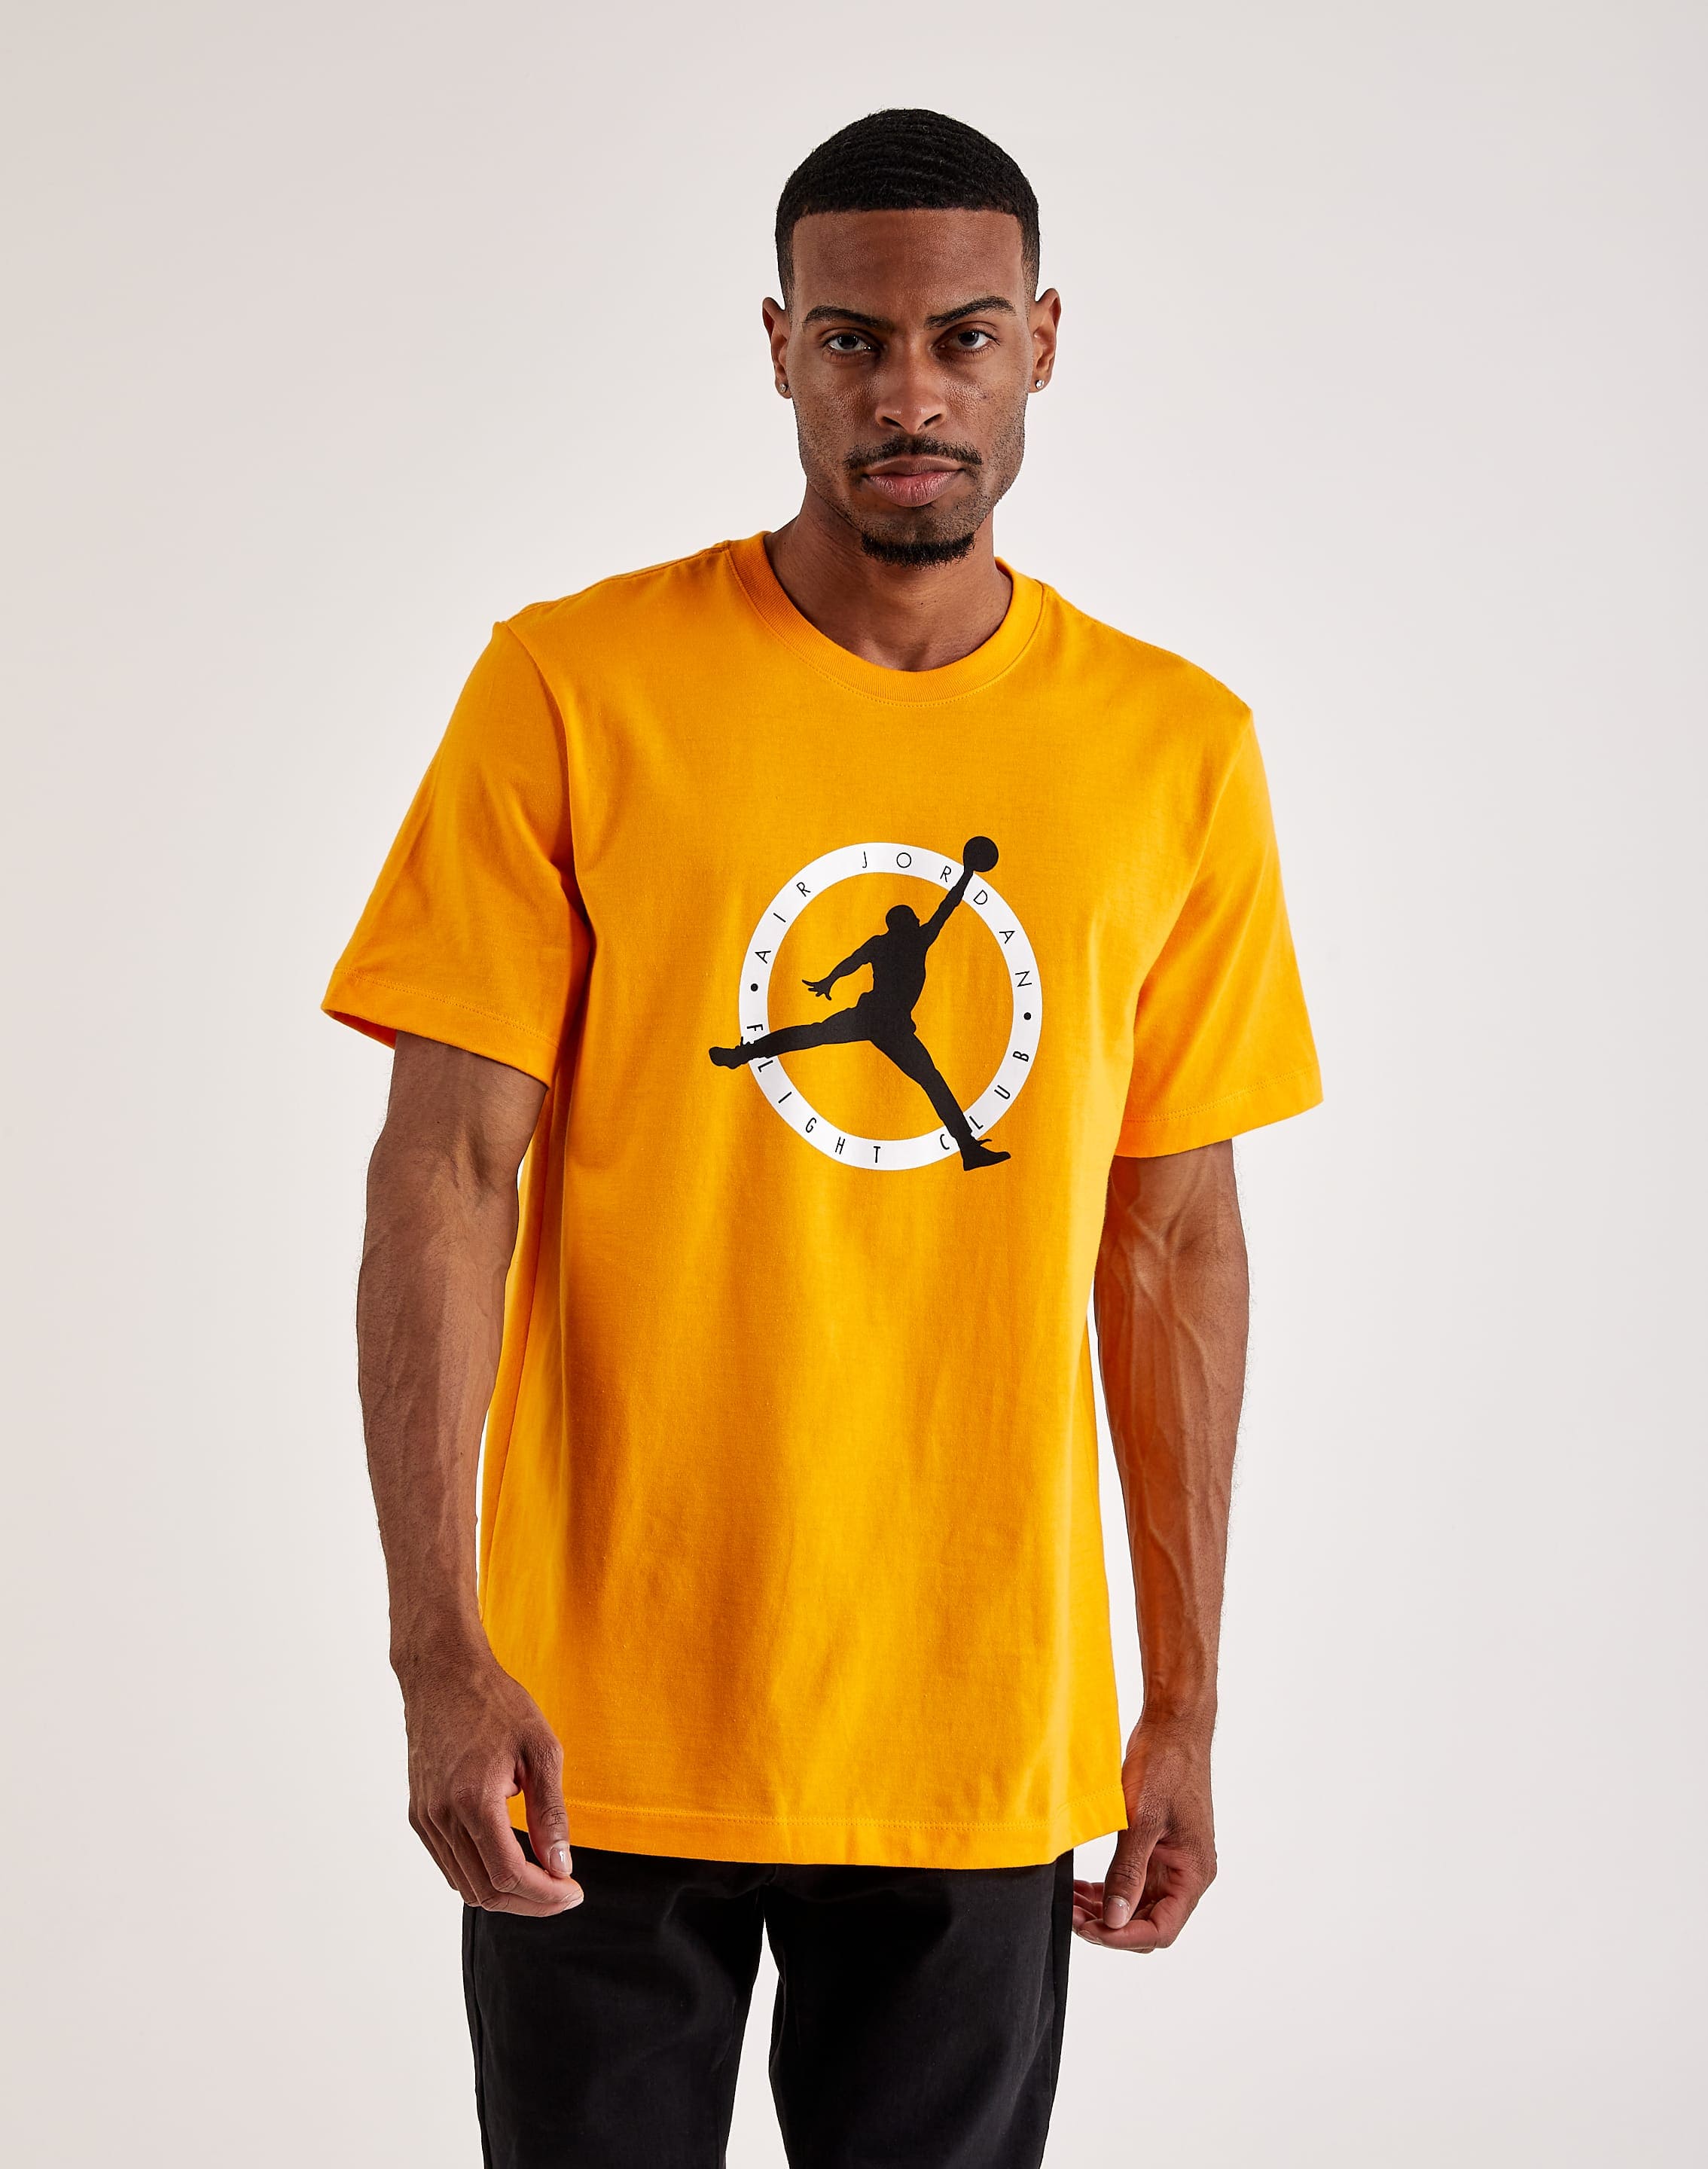 Mitchell & Ness Men's Shirt - Yellow - M